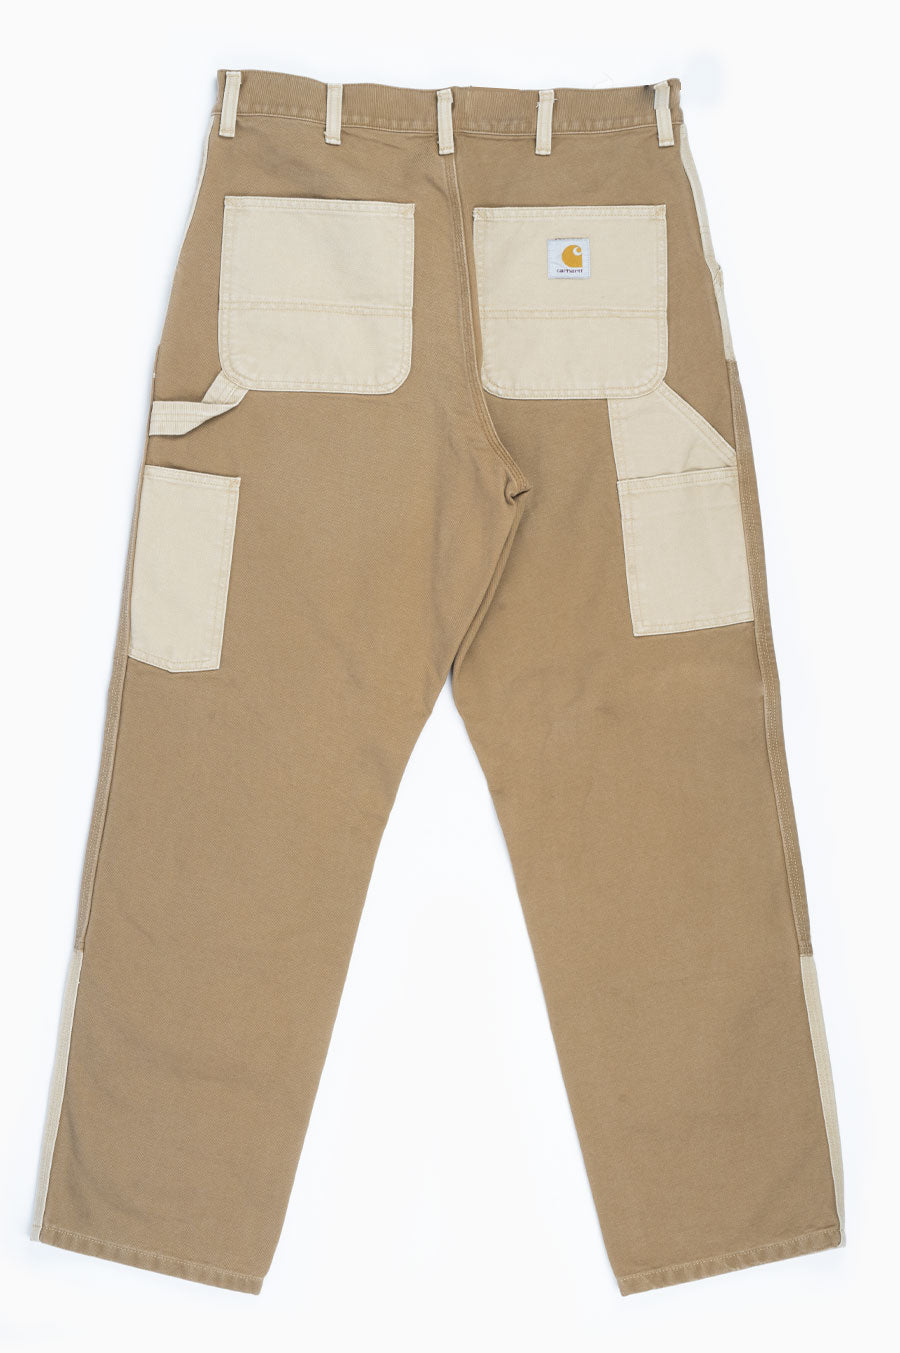 Carhartt pants mens brown - Gem